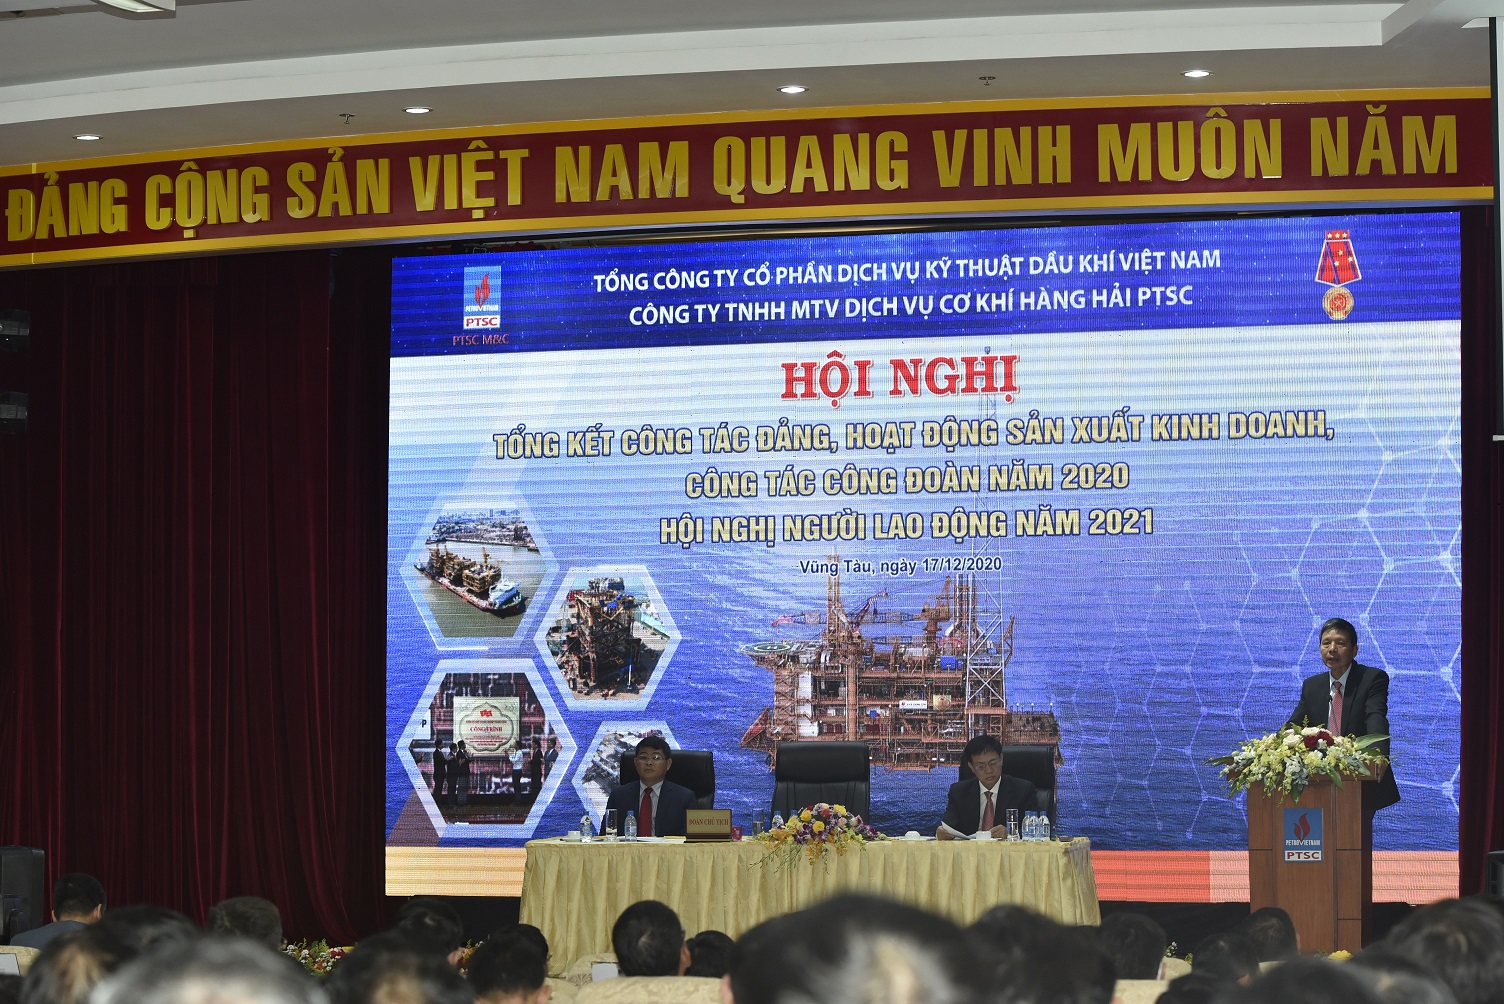 Hình 5. Đồng chí Đồng Xuân Thắng phát biểu tại Hội nghị